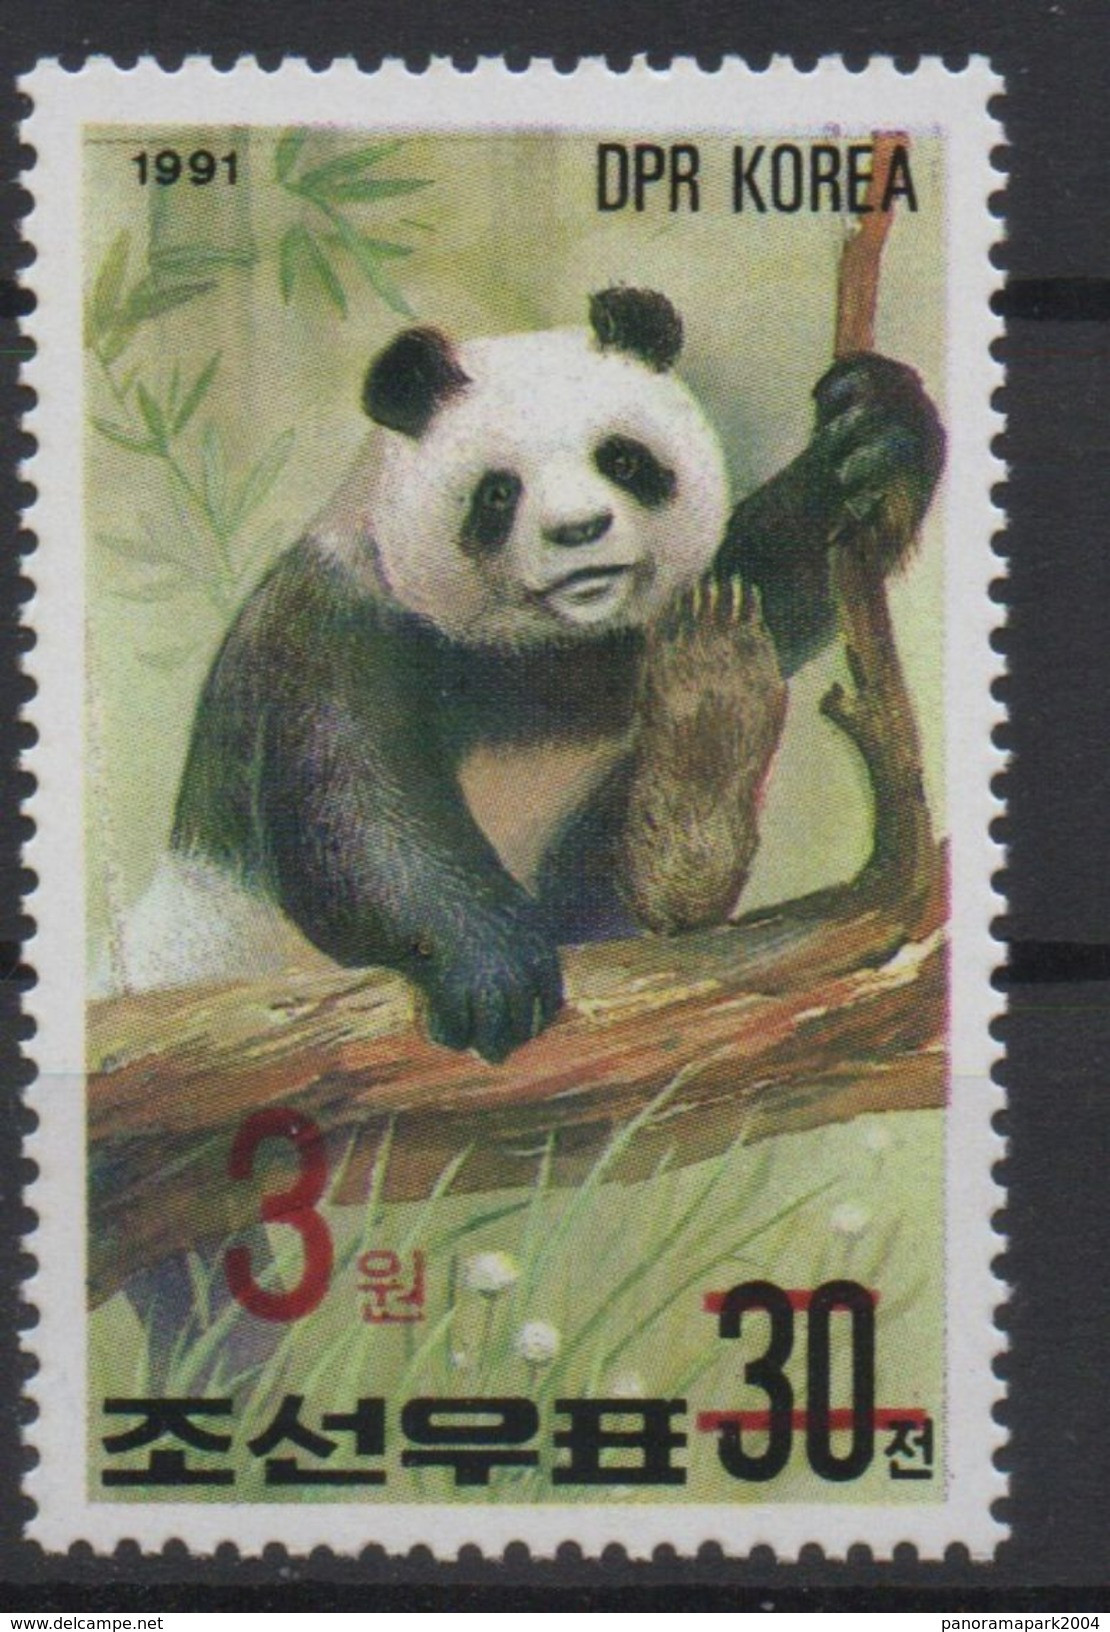 North Korea Corée Du Nord 2006 Mi. 5051 Surchargé Rouge RED OVERPRINT Faune Fauna Ours Bear Bär Panda MNH** RARE - Bears